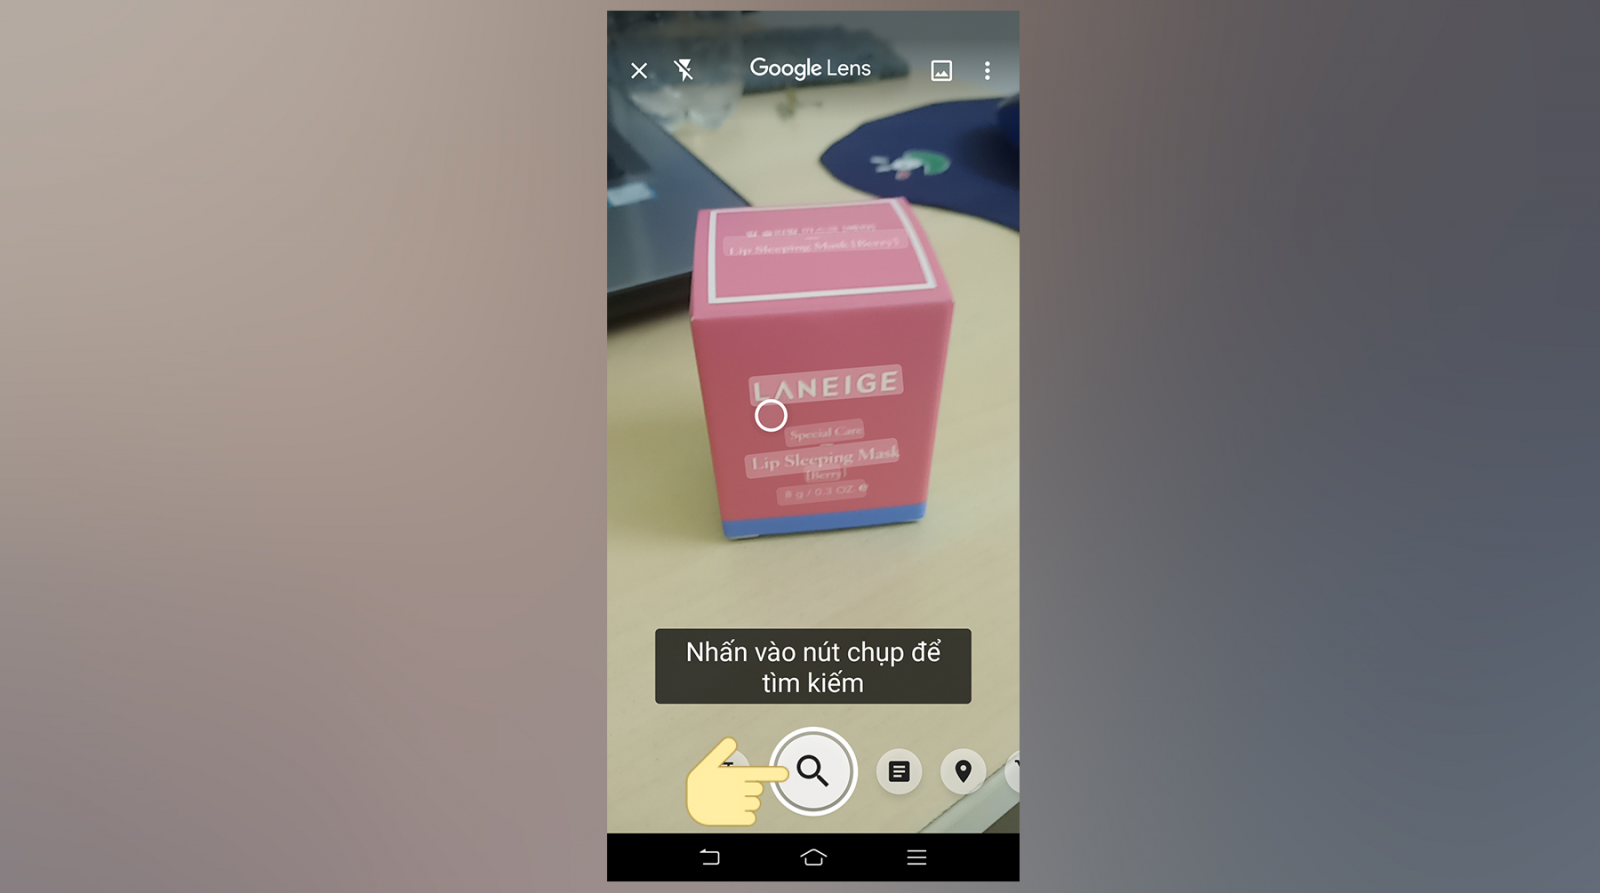 Google Ống Kính là 1 khí cụ giúp cho bạn lần tìm tòi vấn đề hình hình họa nhanh gọn bên trên điện thoại thông minh Android